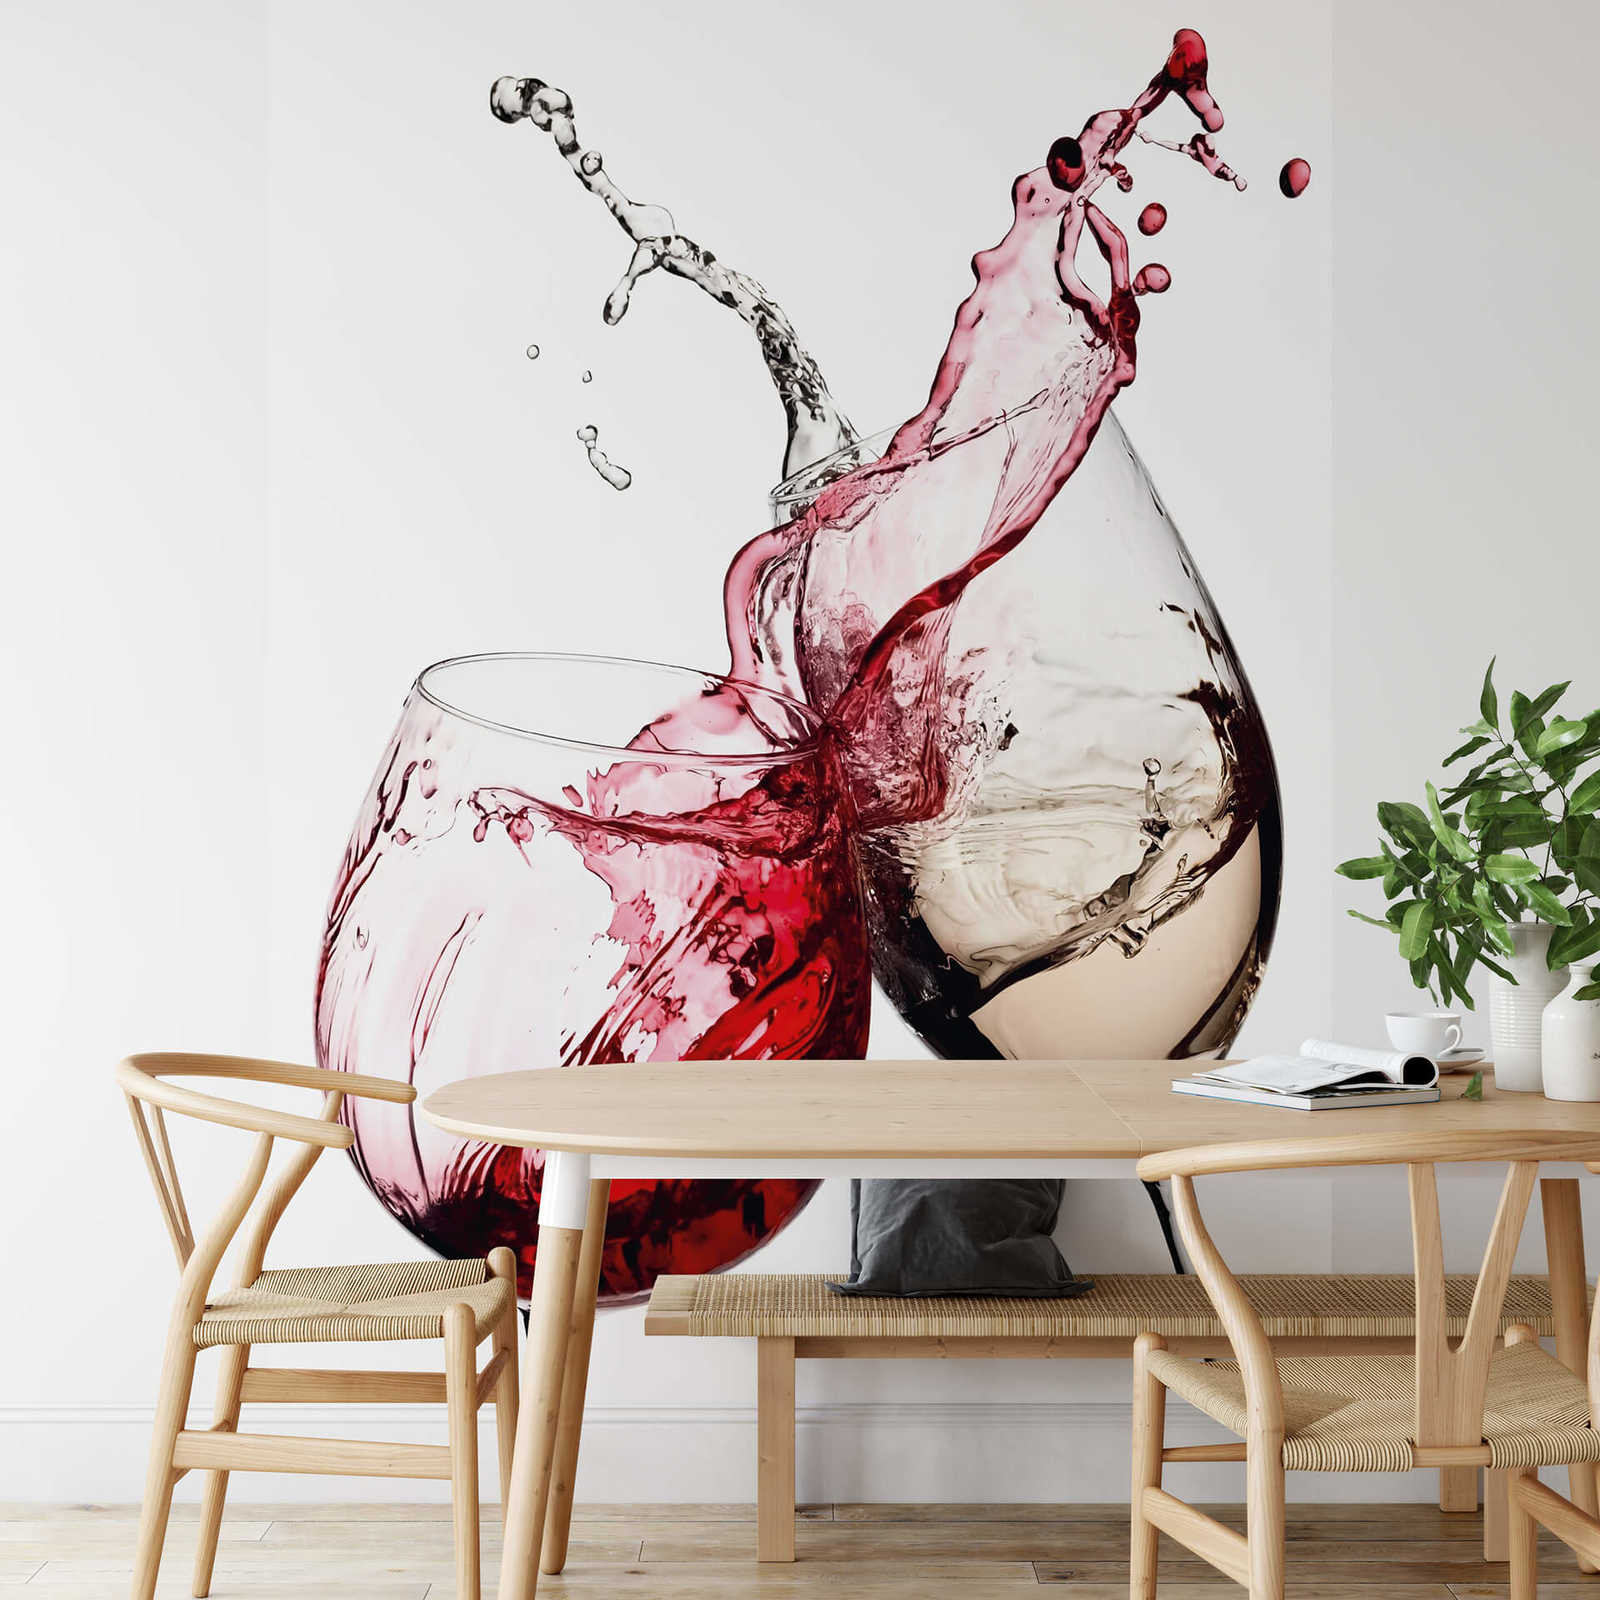             Papel pintado de vino Copas de vino blanco y rojo
        